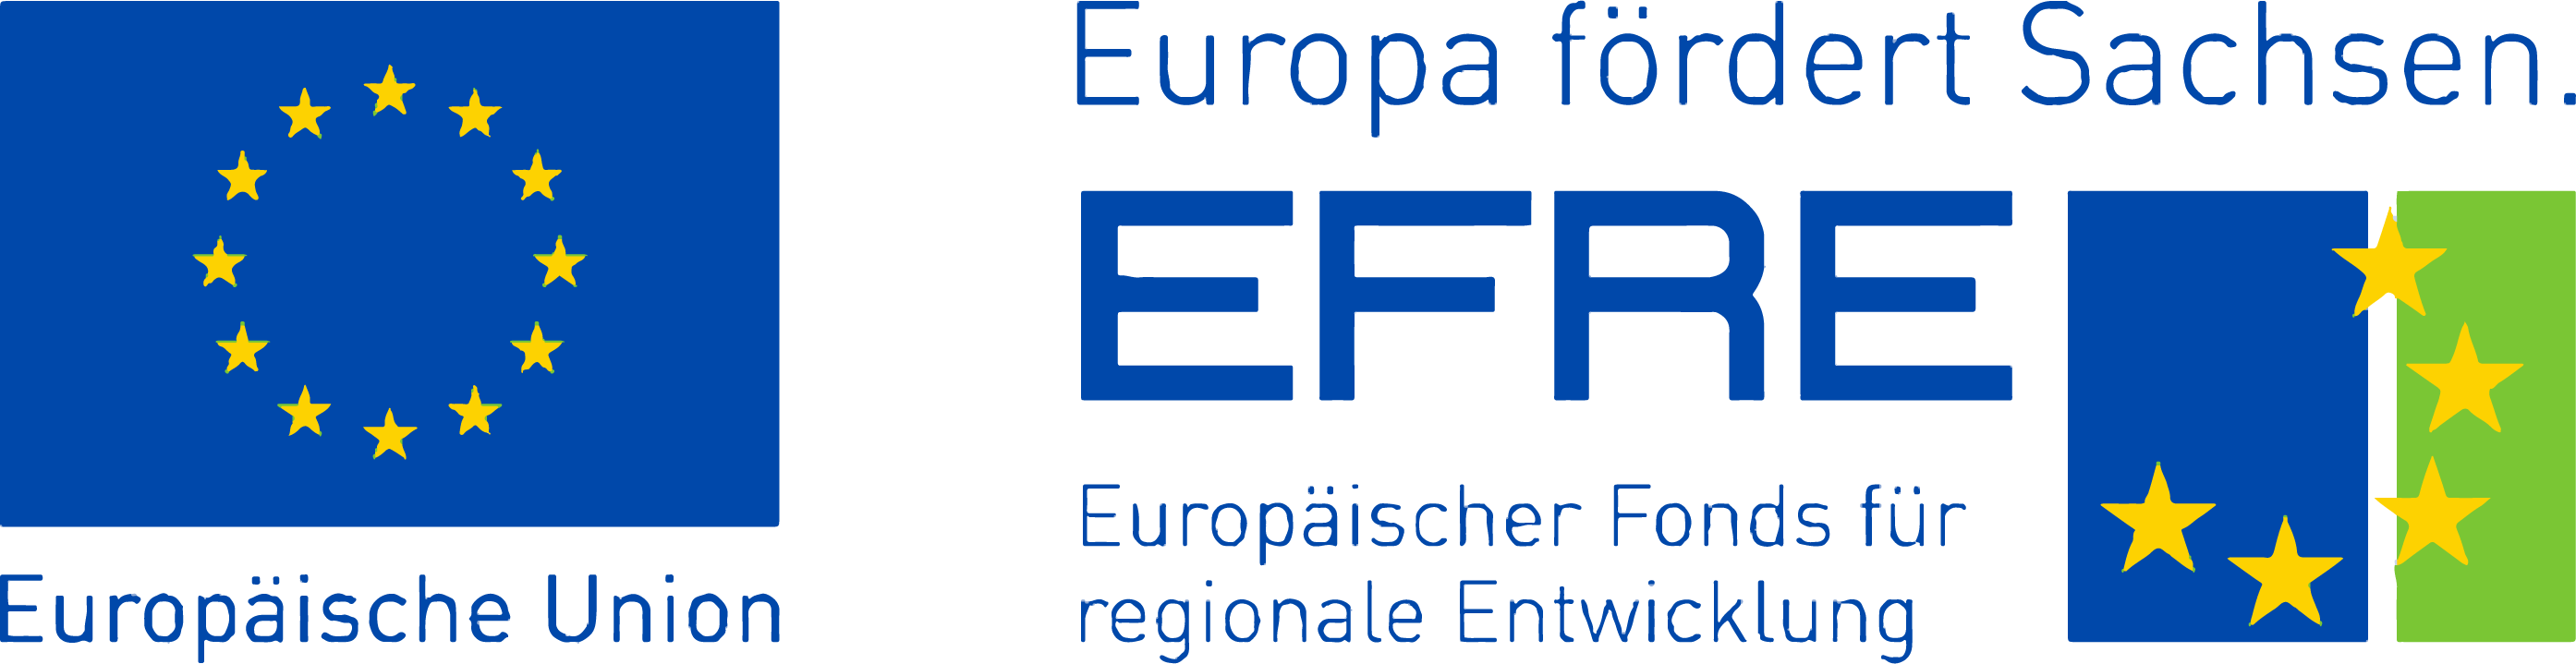 ESF_EU_quer_2014-2020